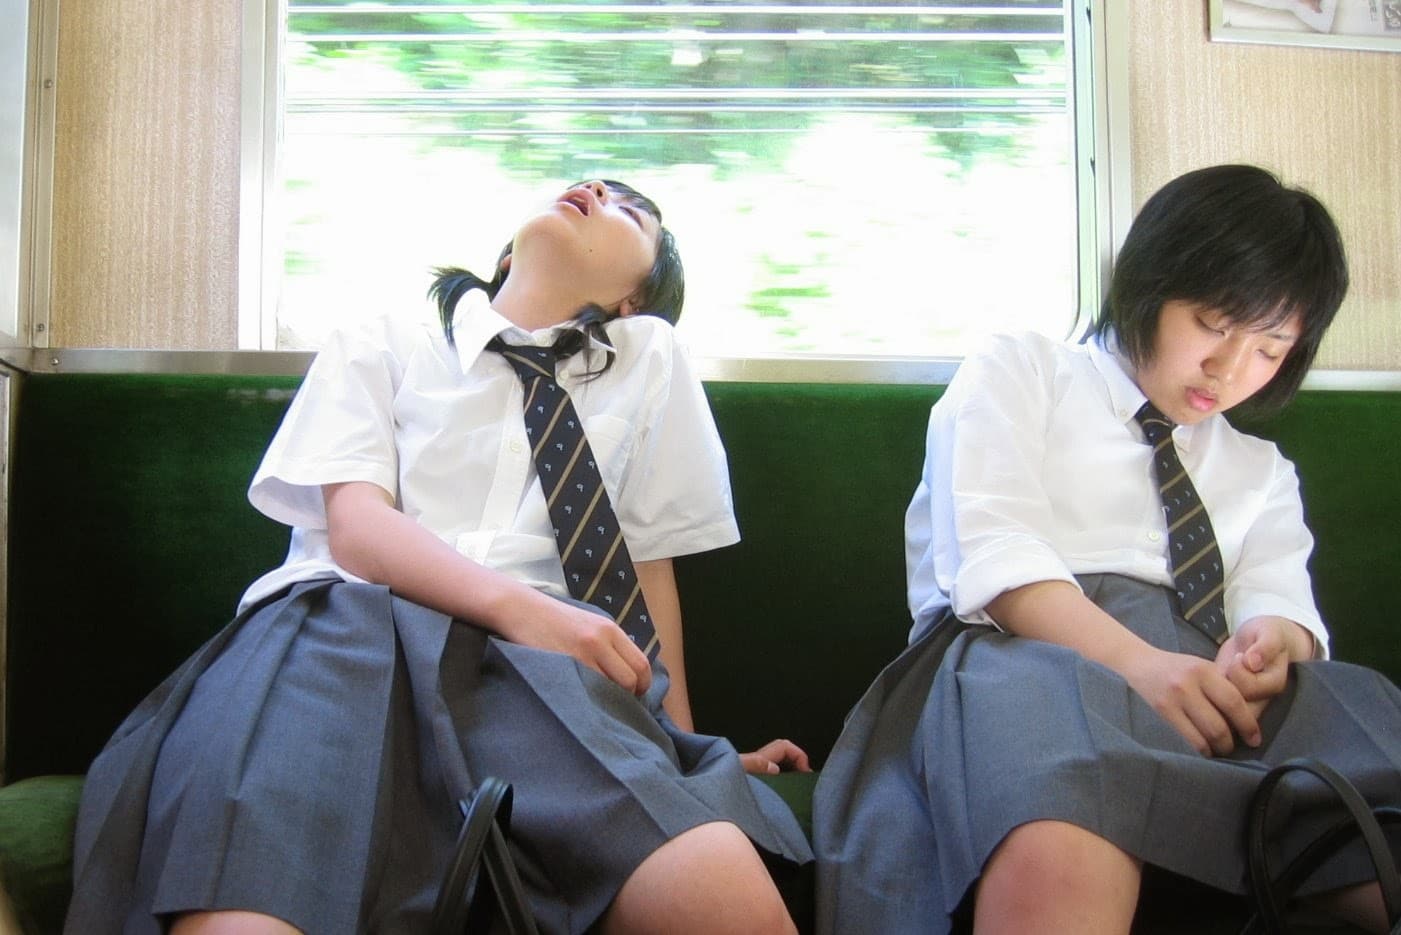 台 北 往 淡 水 捷 運 末 班 車 上 睡 過 頭 的 士 林 阿 伯 - 鷹 眼 觀 察 